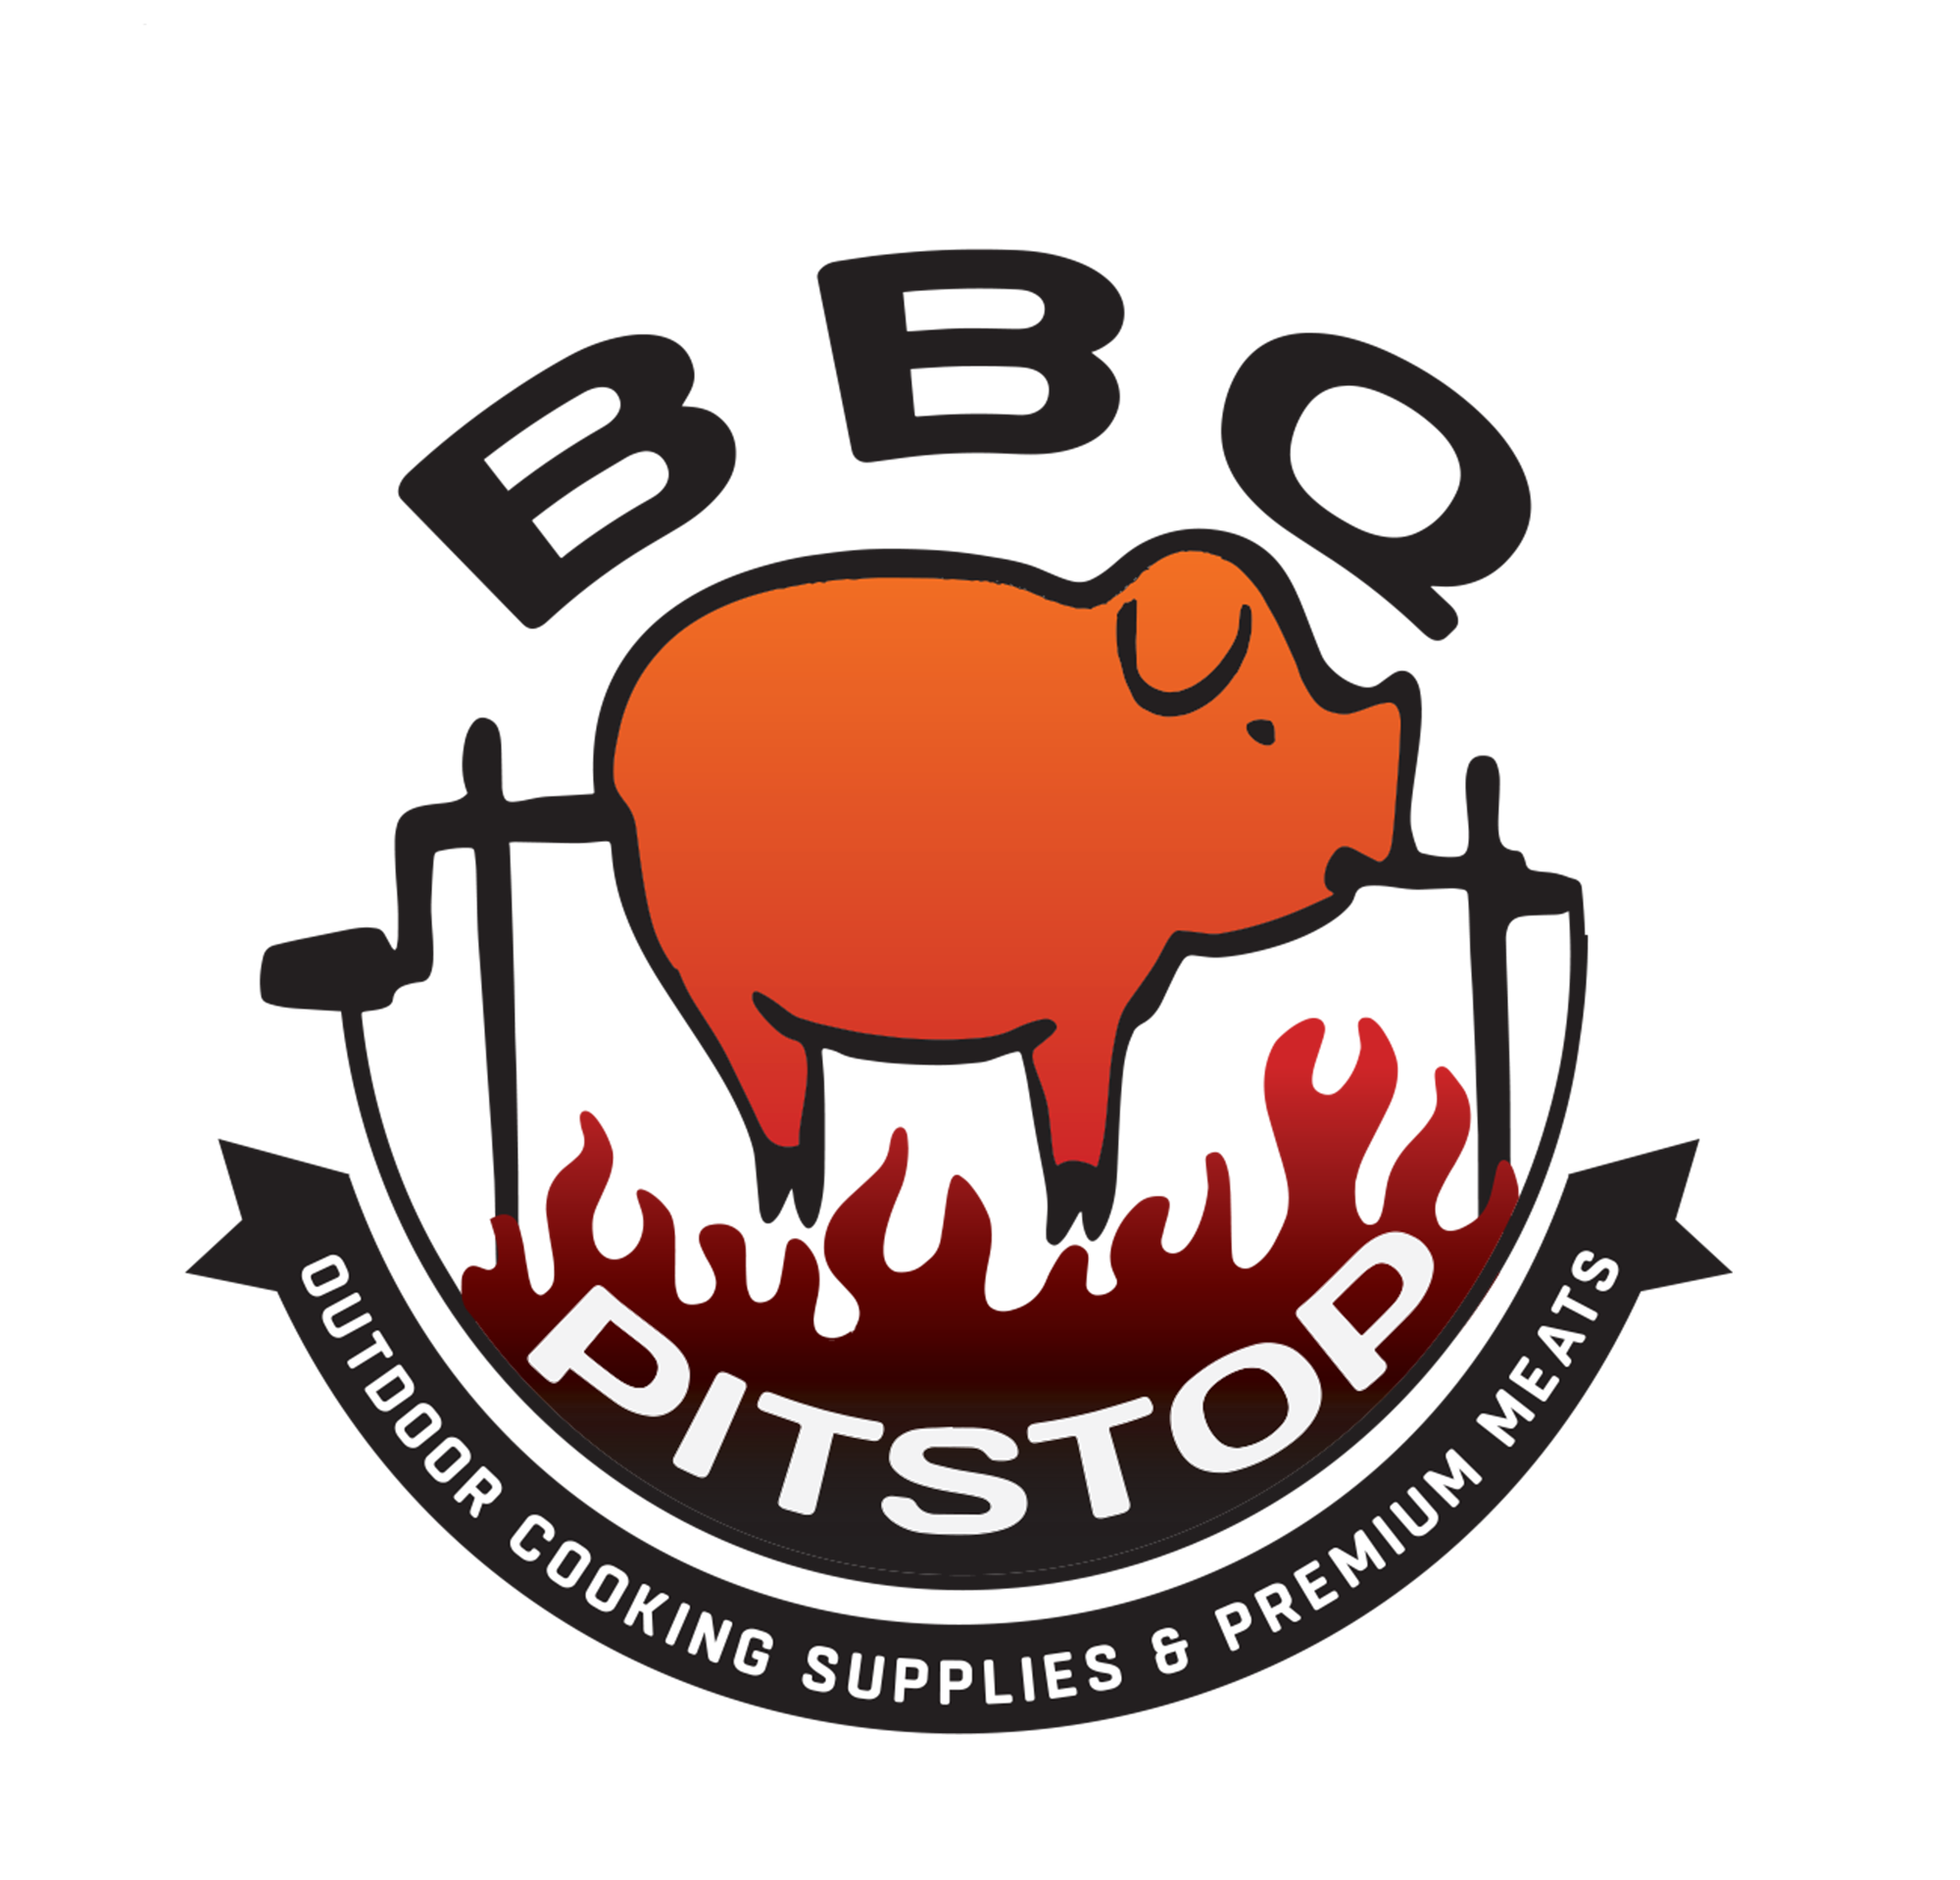 Meat Church Honey Hog BBQ Rub – BFRbeef